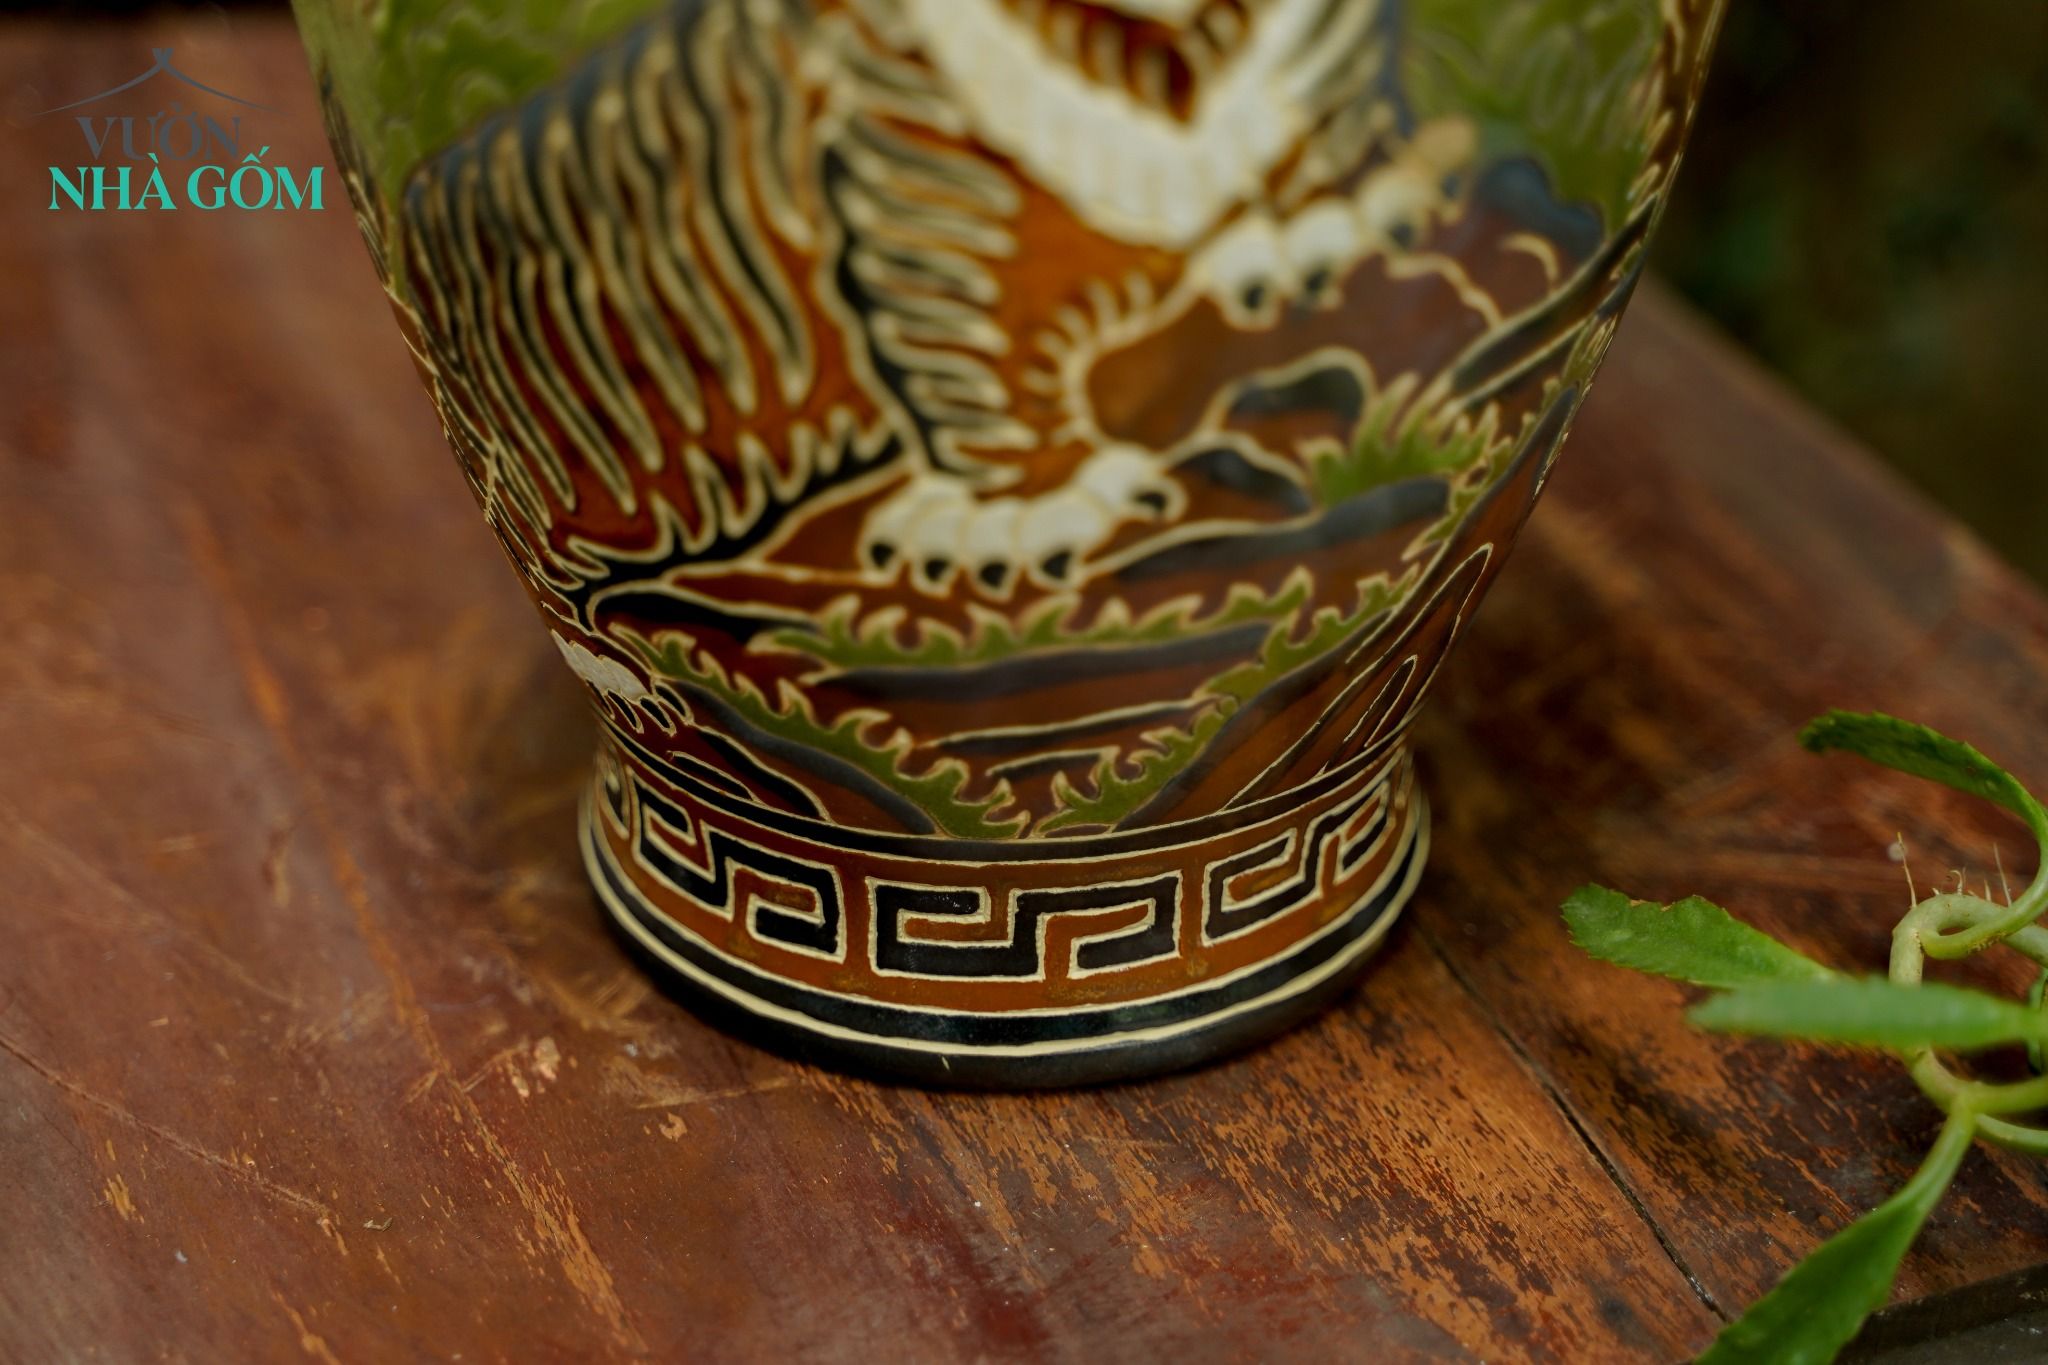  Bình gốm sáng tác độc bản, nghệ nhân Dương Minh Tâm, Xưởng Thủ Biên, H45cm, sưu tầm, quà tặng 